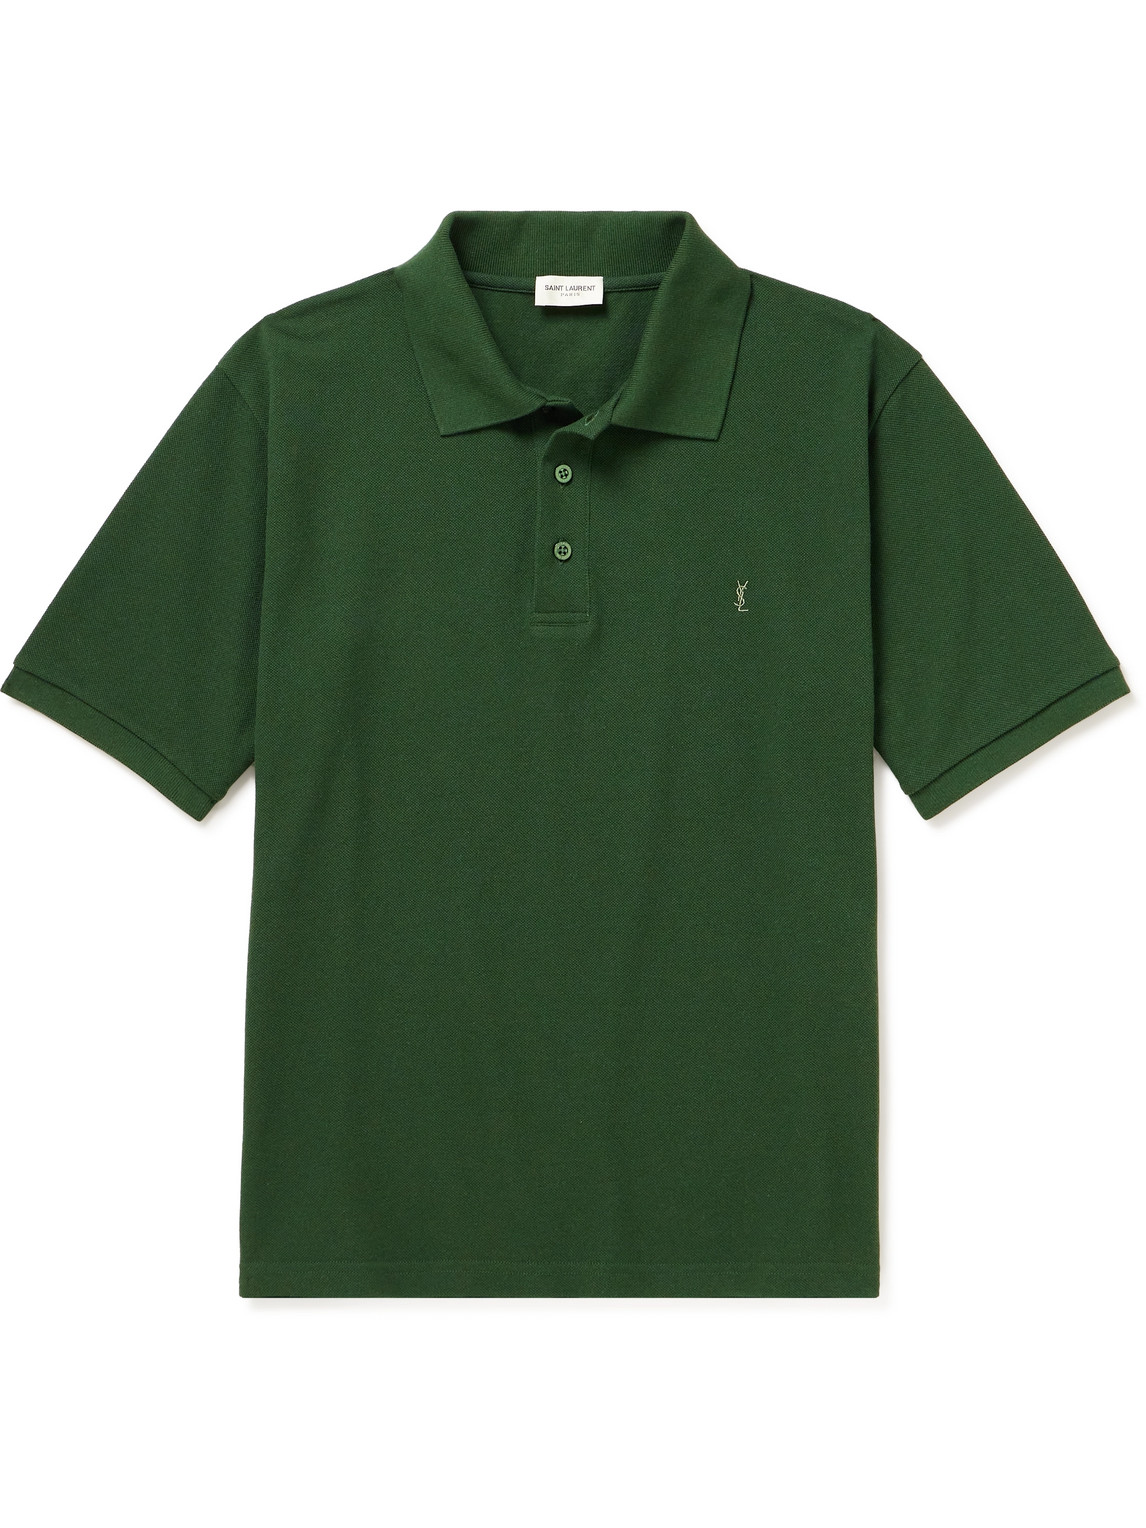 SAINT LAURENT - Logo-Embroidered Cotton-Blend Piqué Polo Shirt - Men - Green - XS von SAINT LAURENT